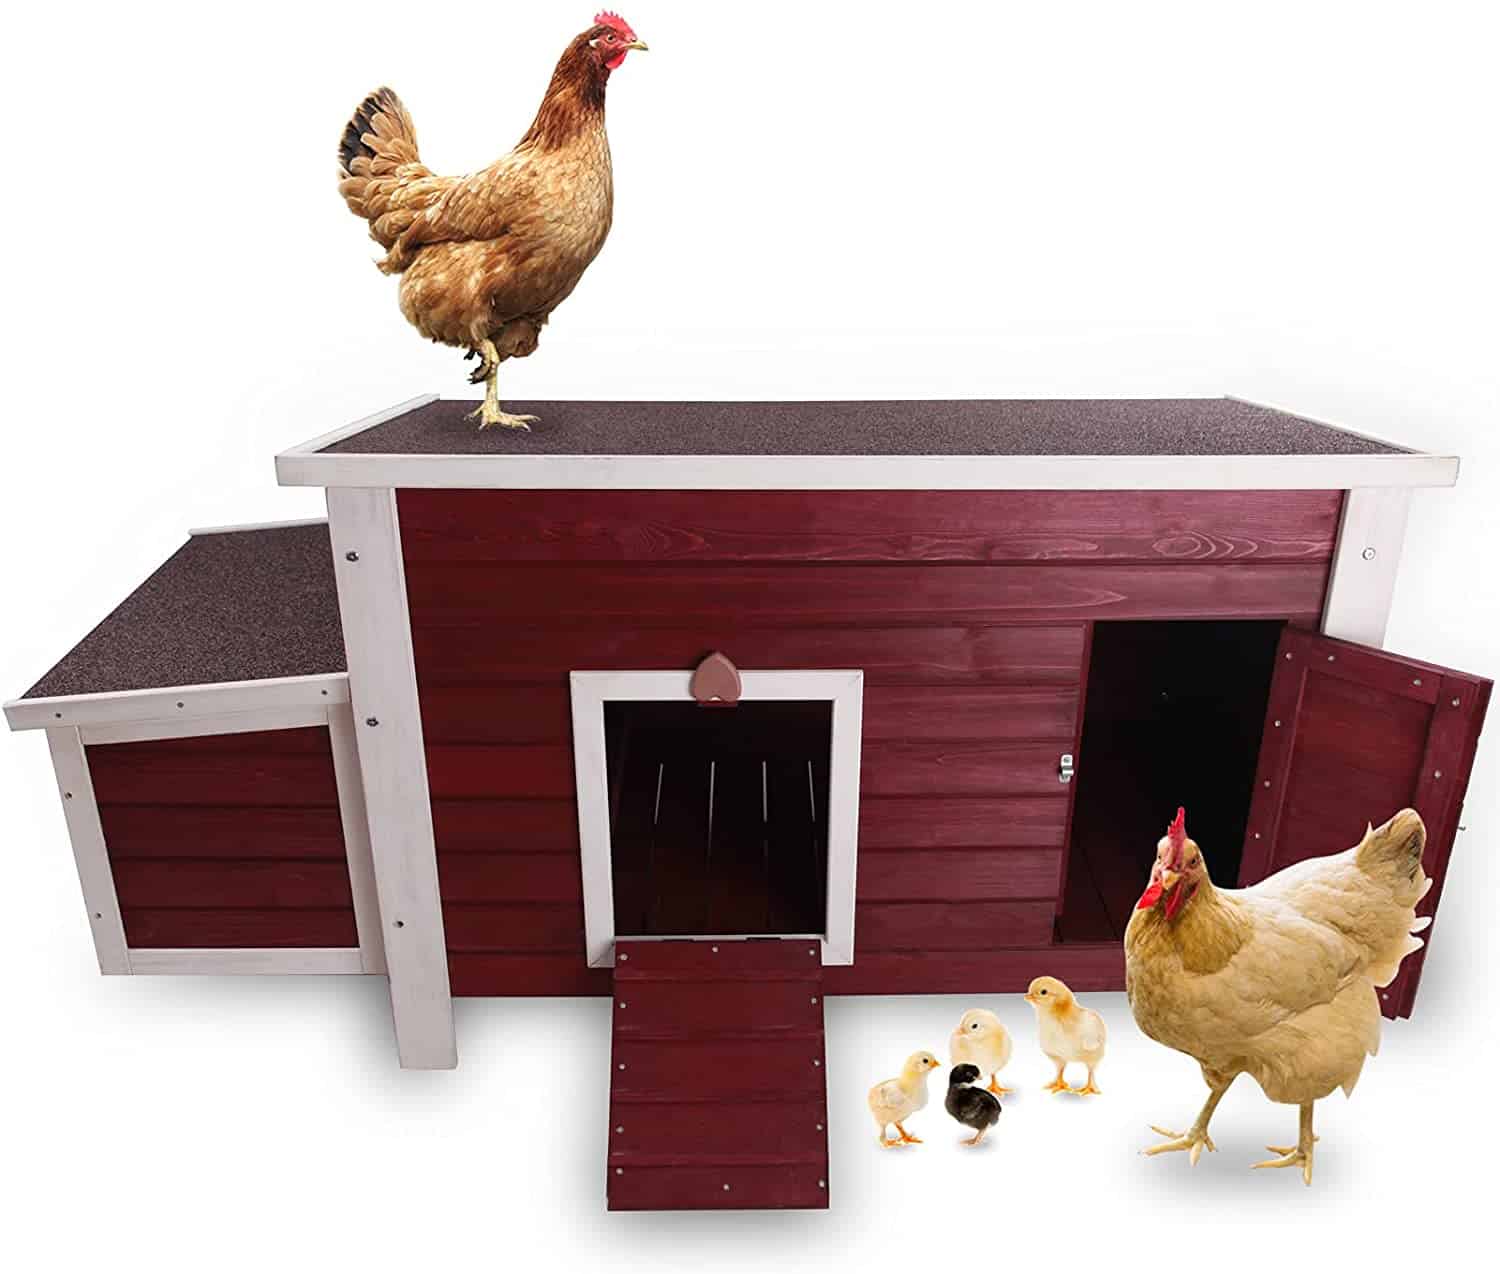 Petsfit Weatherproof Outdoor Chicken Coop with Nesting Box